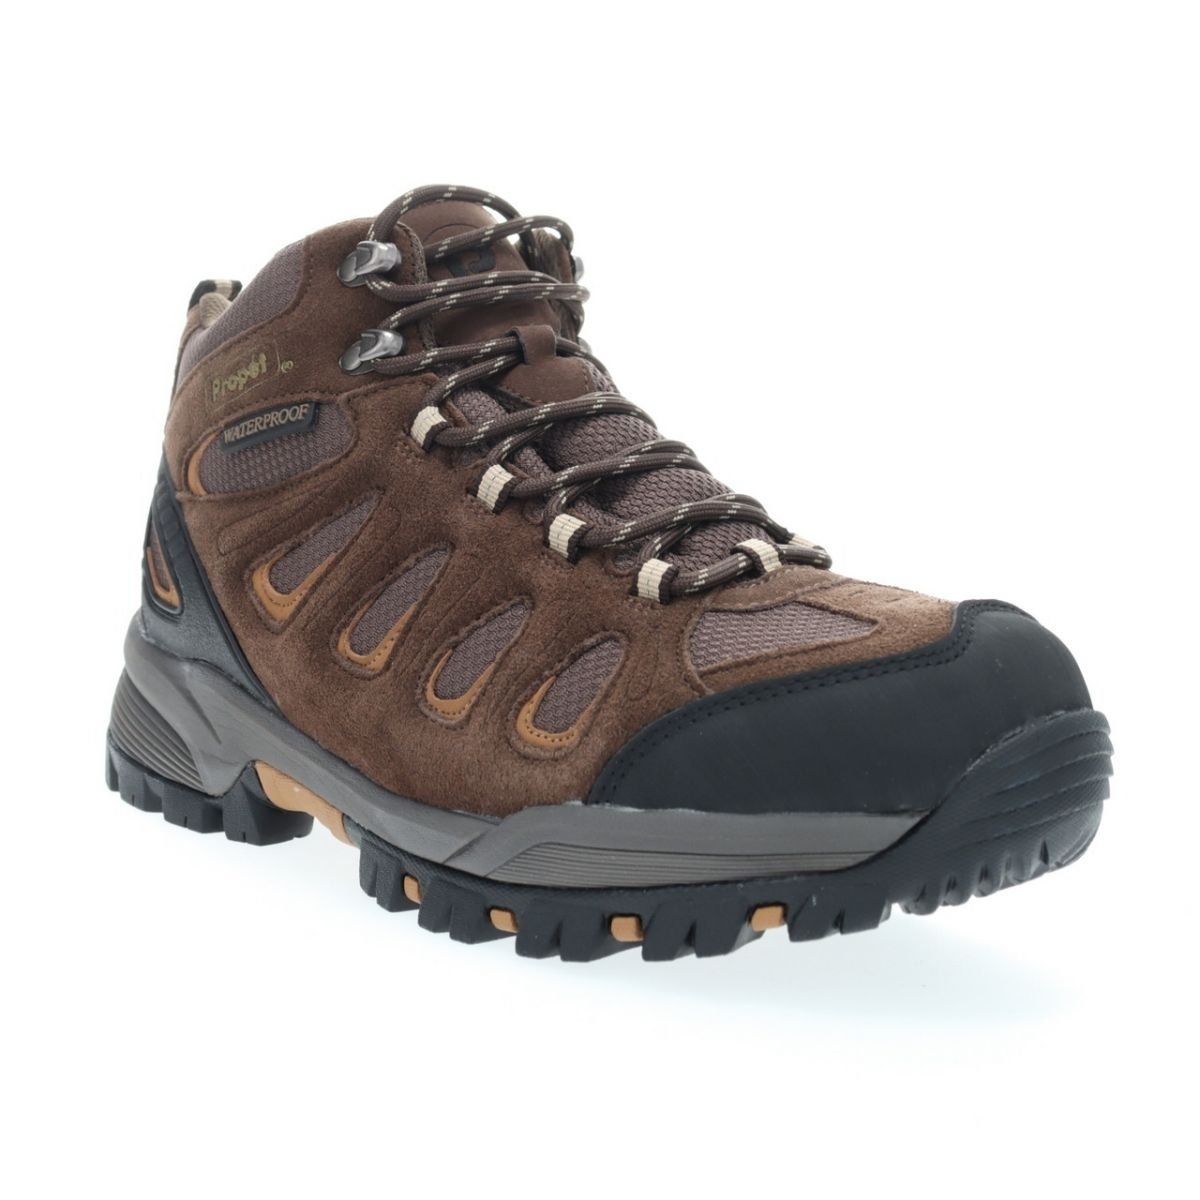 Propet Men's Ridge Walker Hiking Boot Brown - M3599BR 8 XX US Men BROWN - BROWN, 8.5 XX-Wide